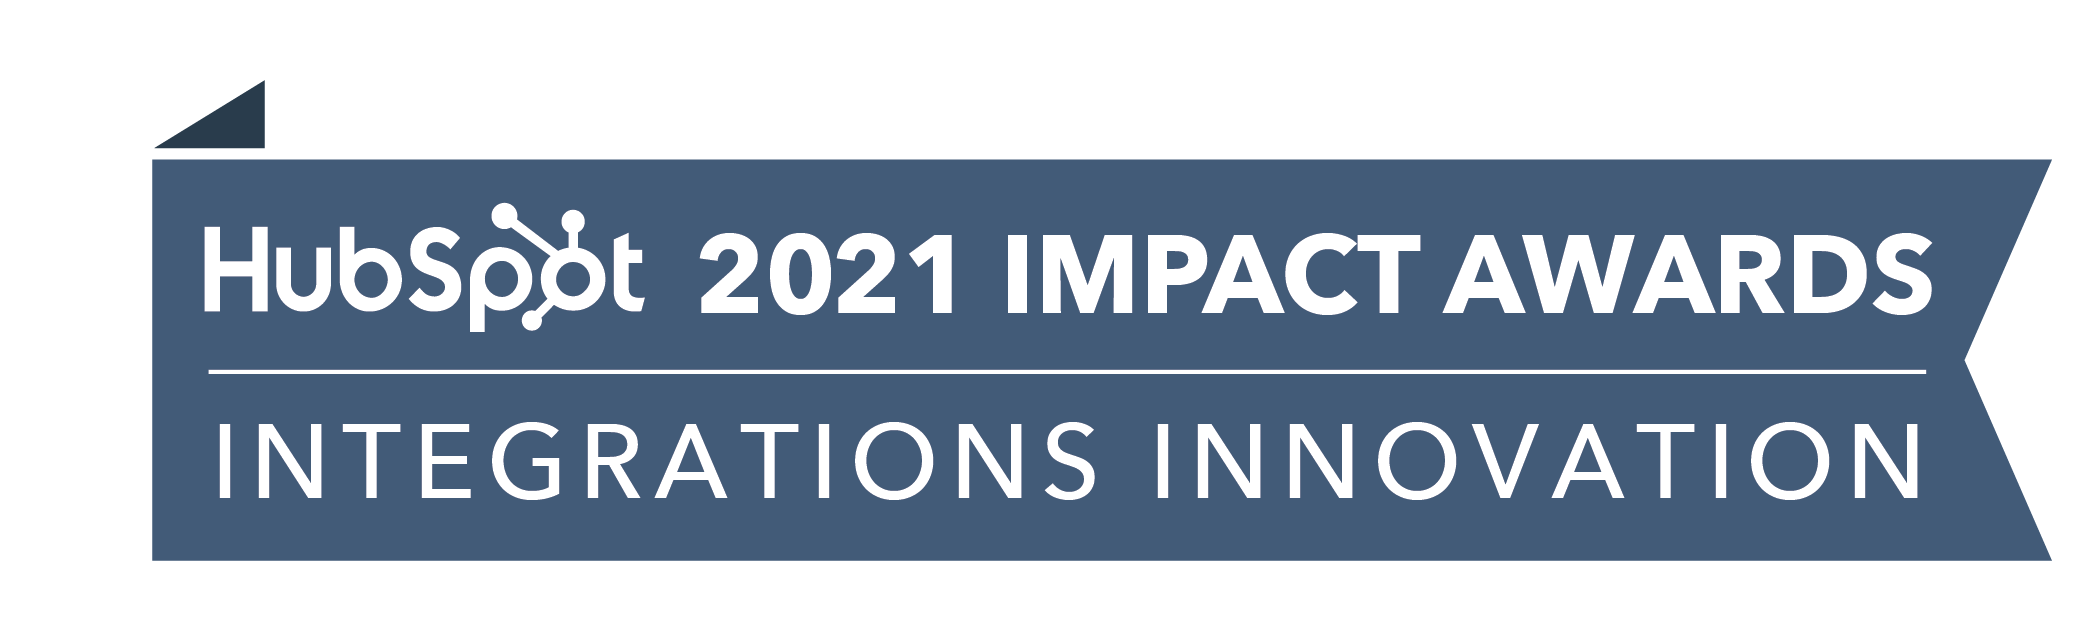 HubSpot_ImpactAwards_2021_IntegrationsInnov2-4